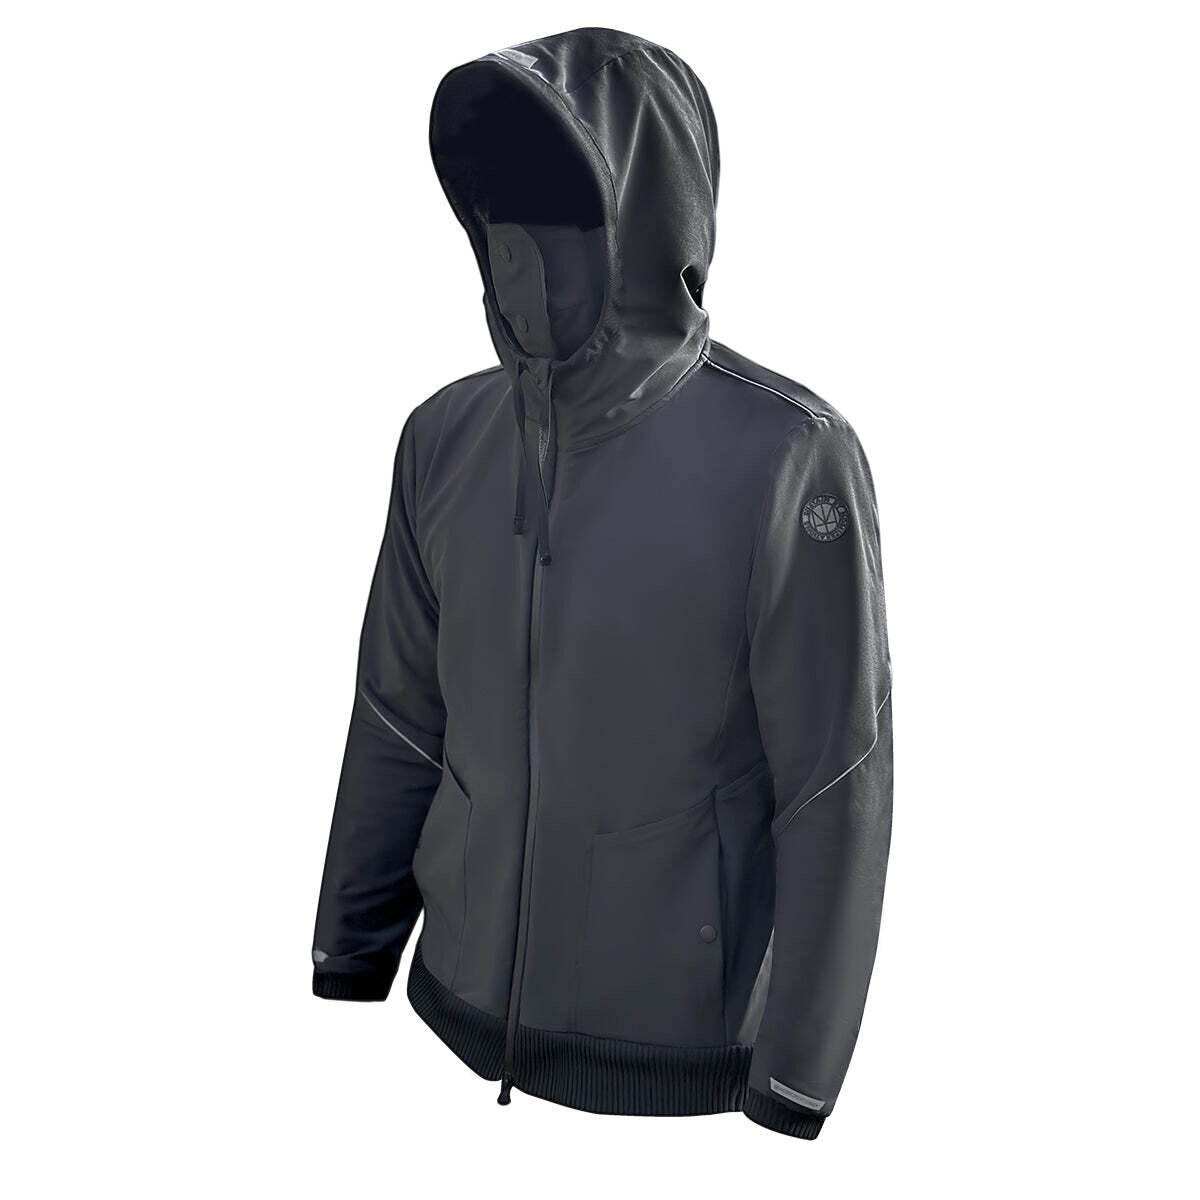 HOMI TheHood - fully zipped hoodie